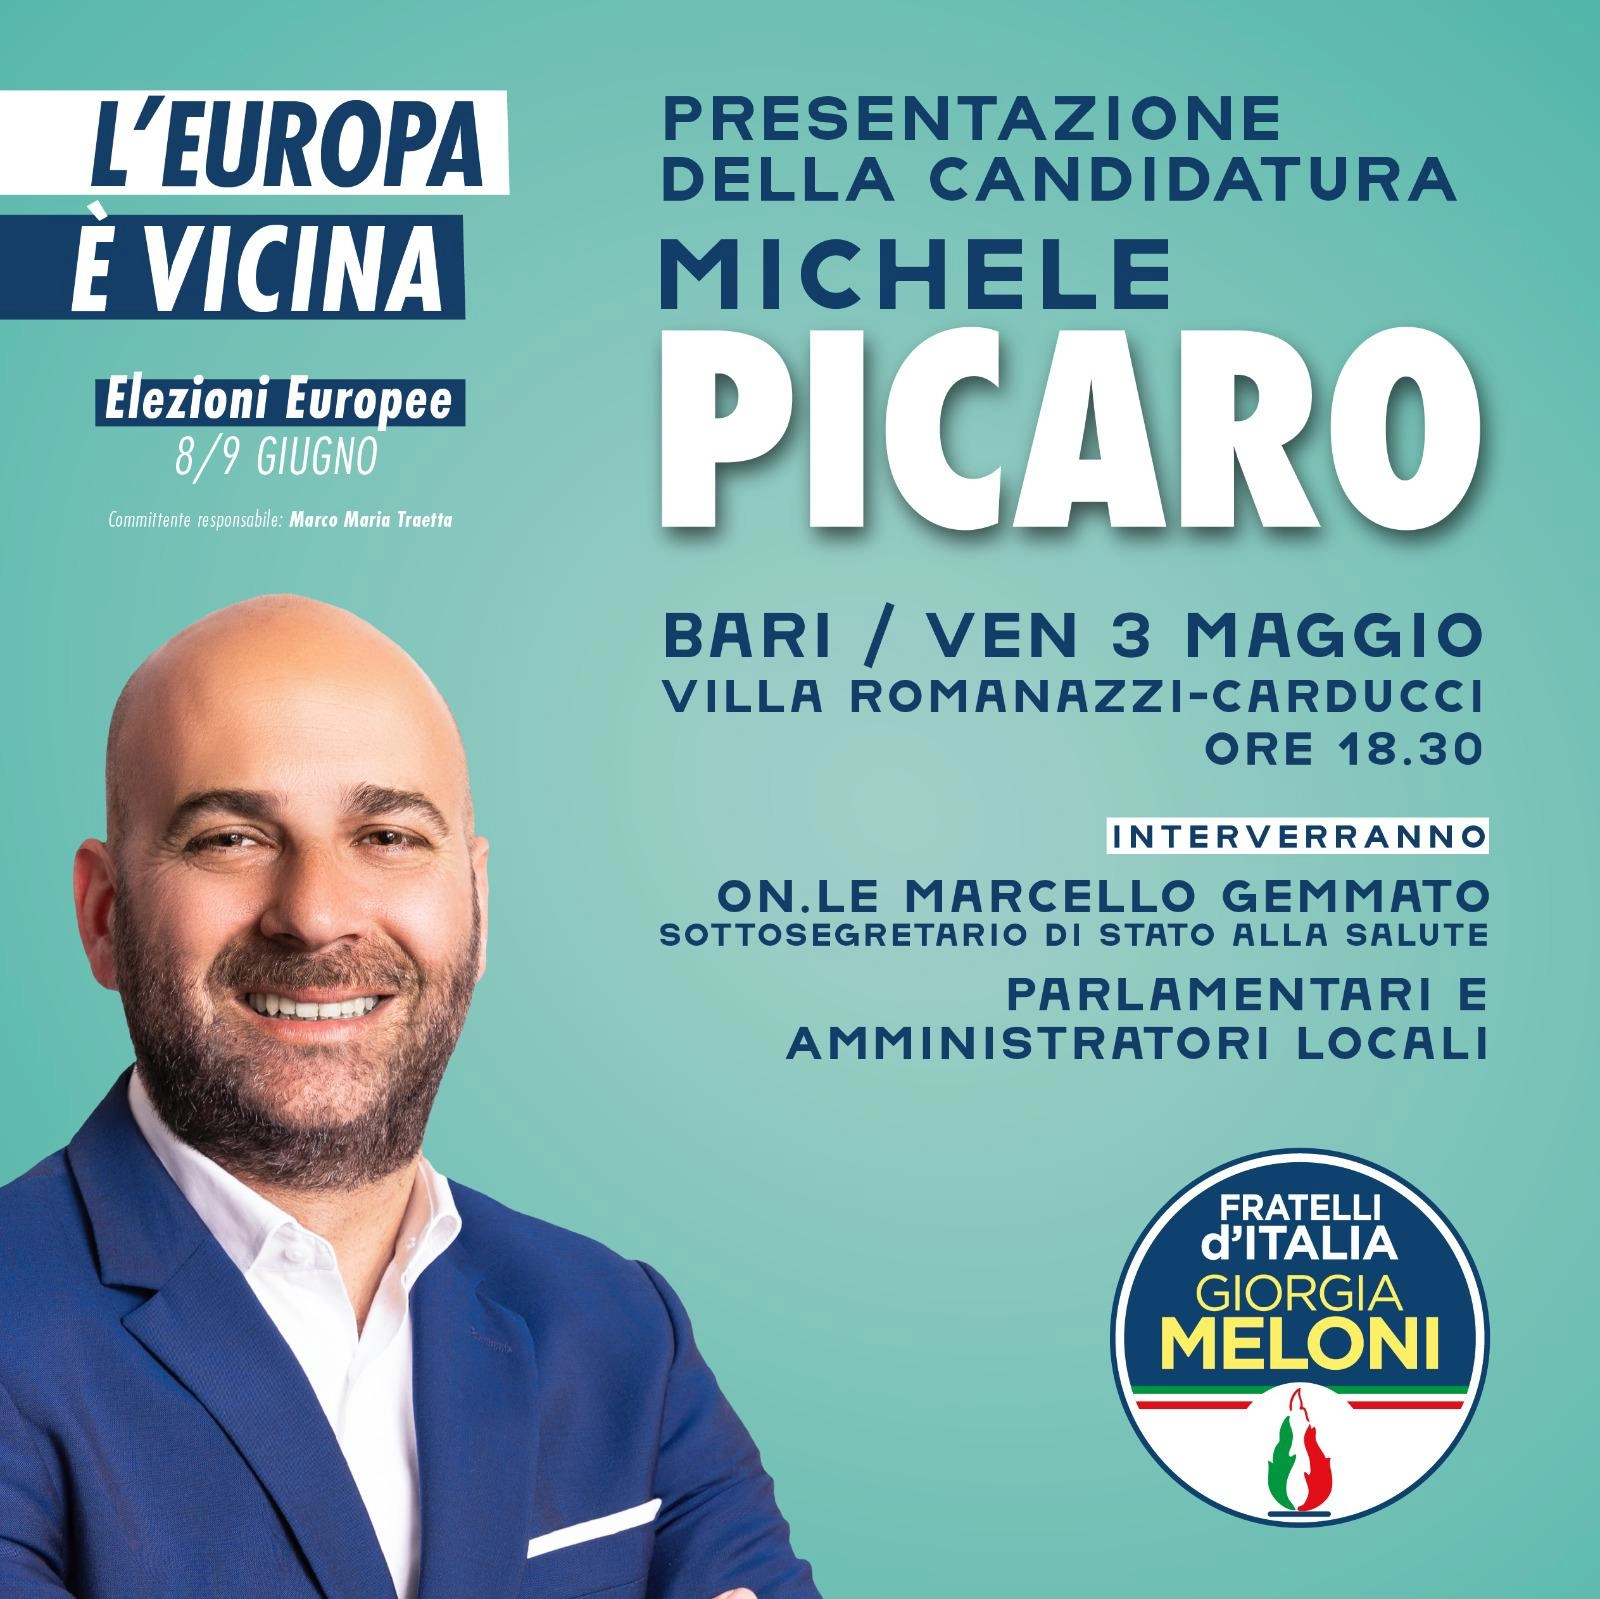 Europee. Fratelli d’Italia: presentazione della candidatura di Michele Picaro